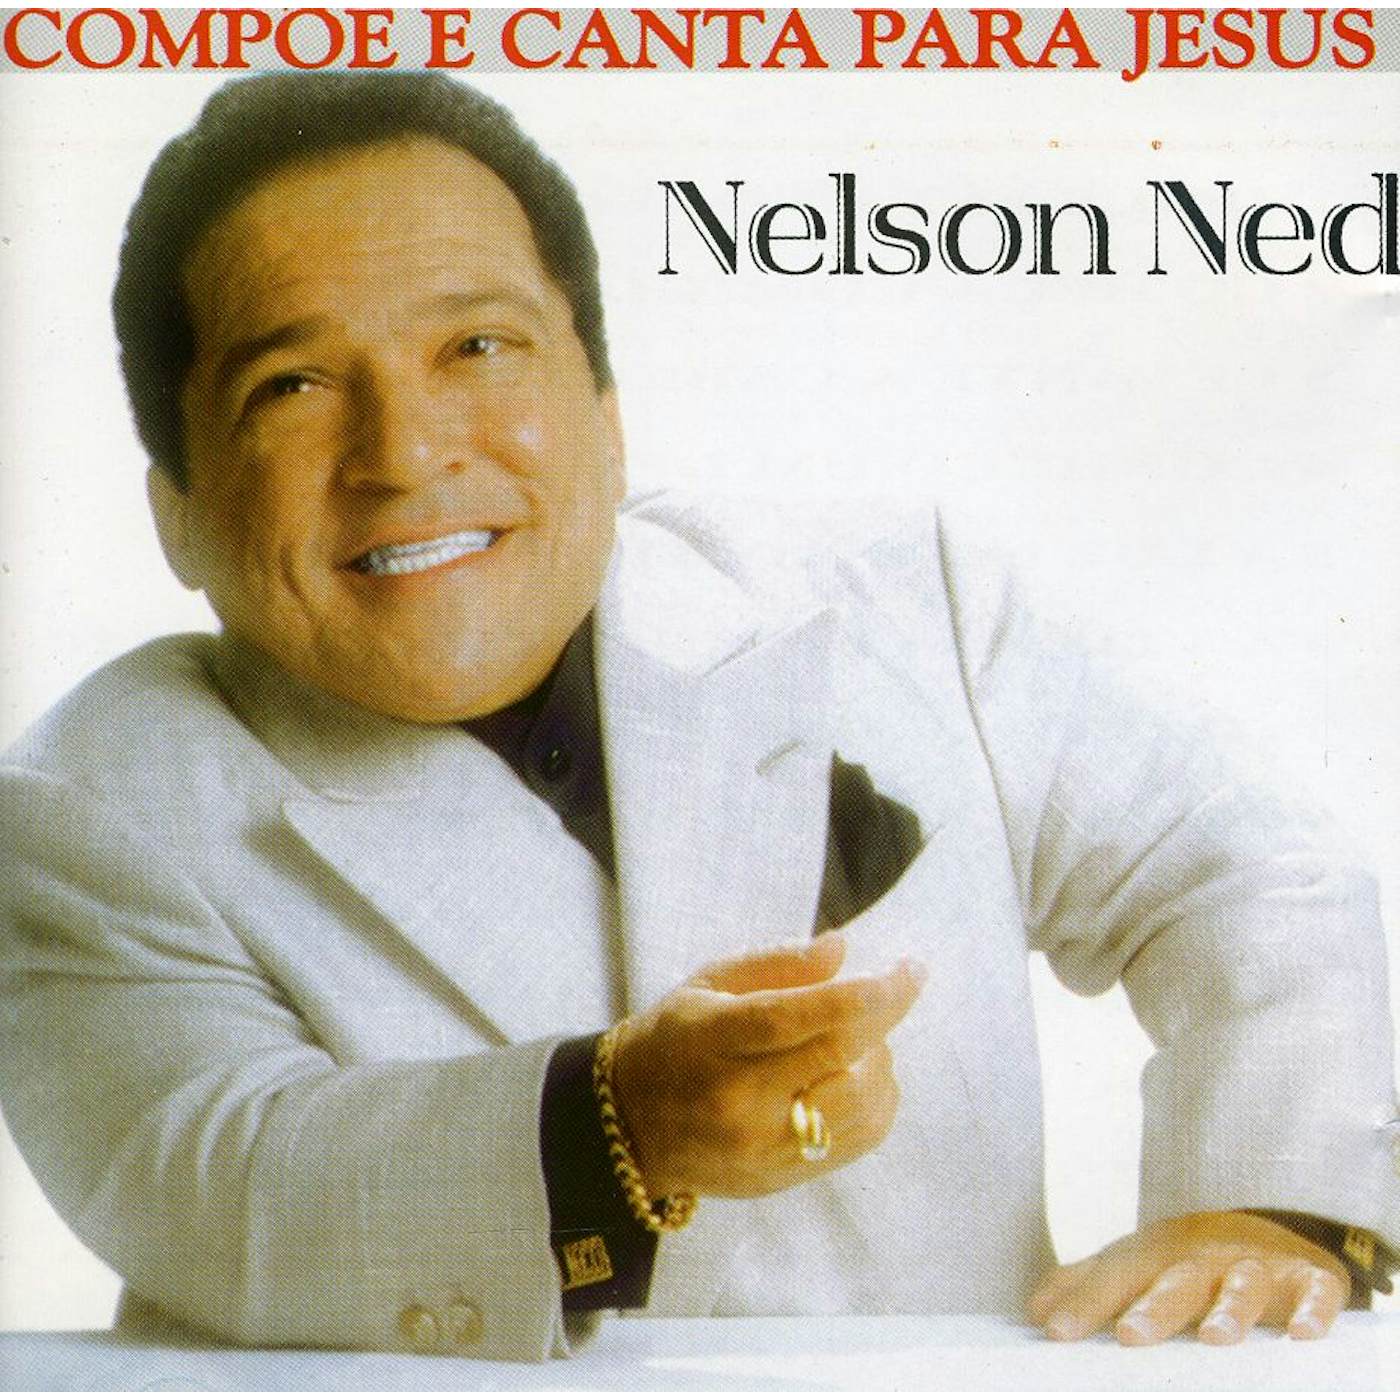 Nelson Ned COMPOE E CANTA PARA JESUS CD